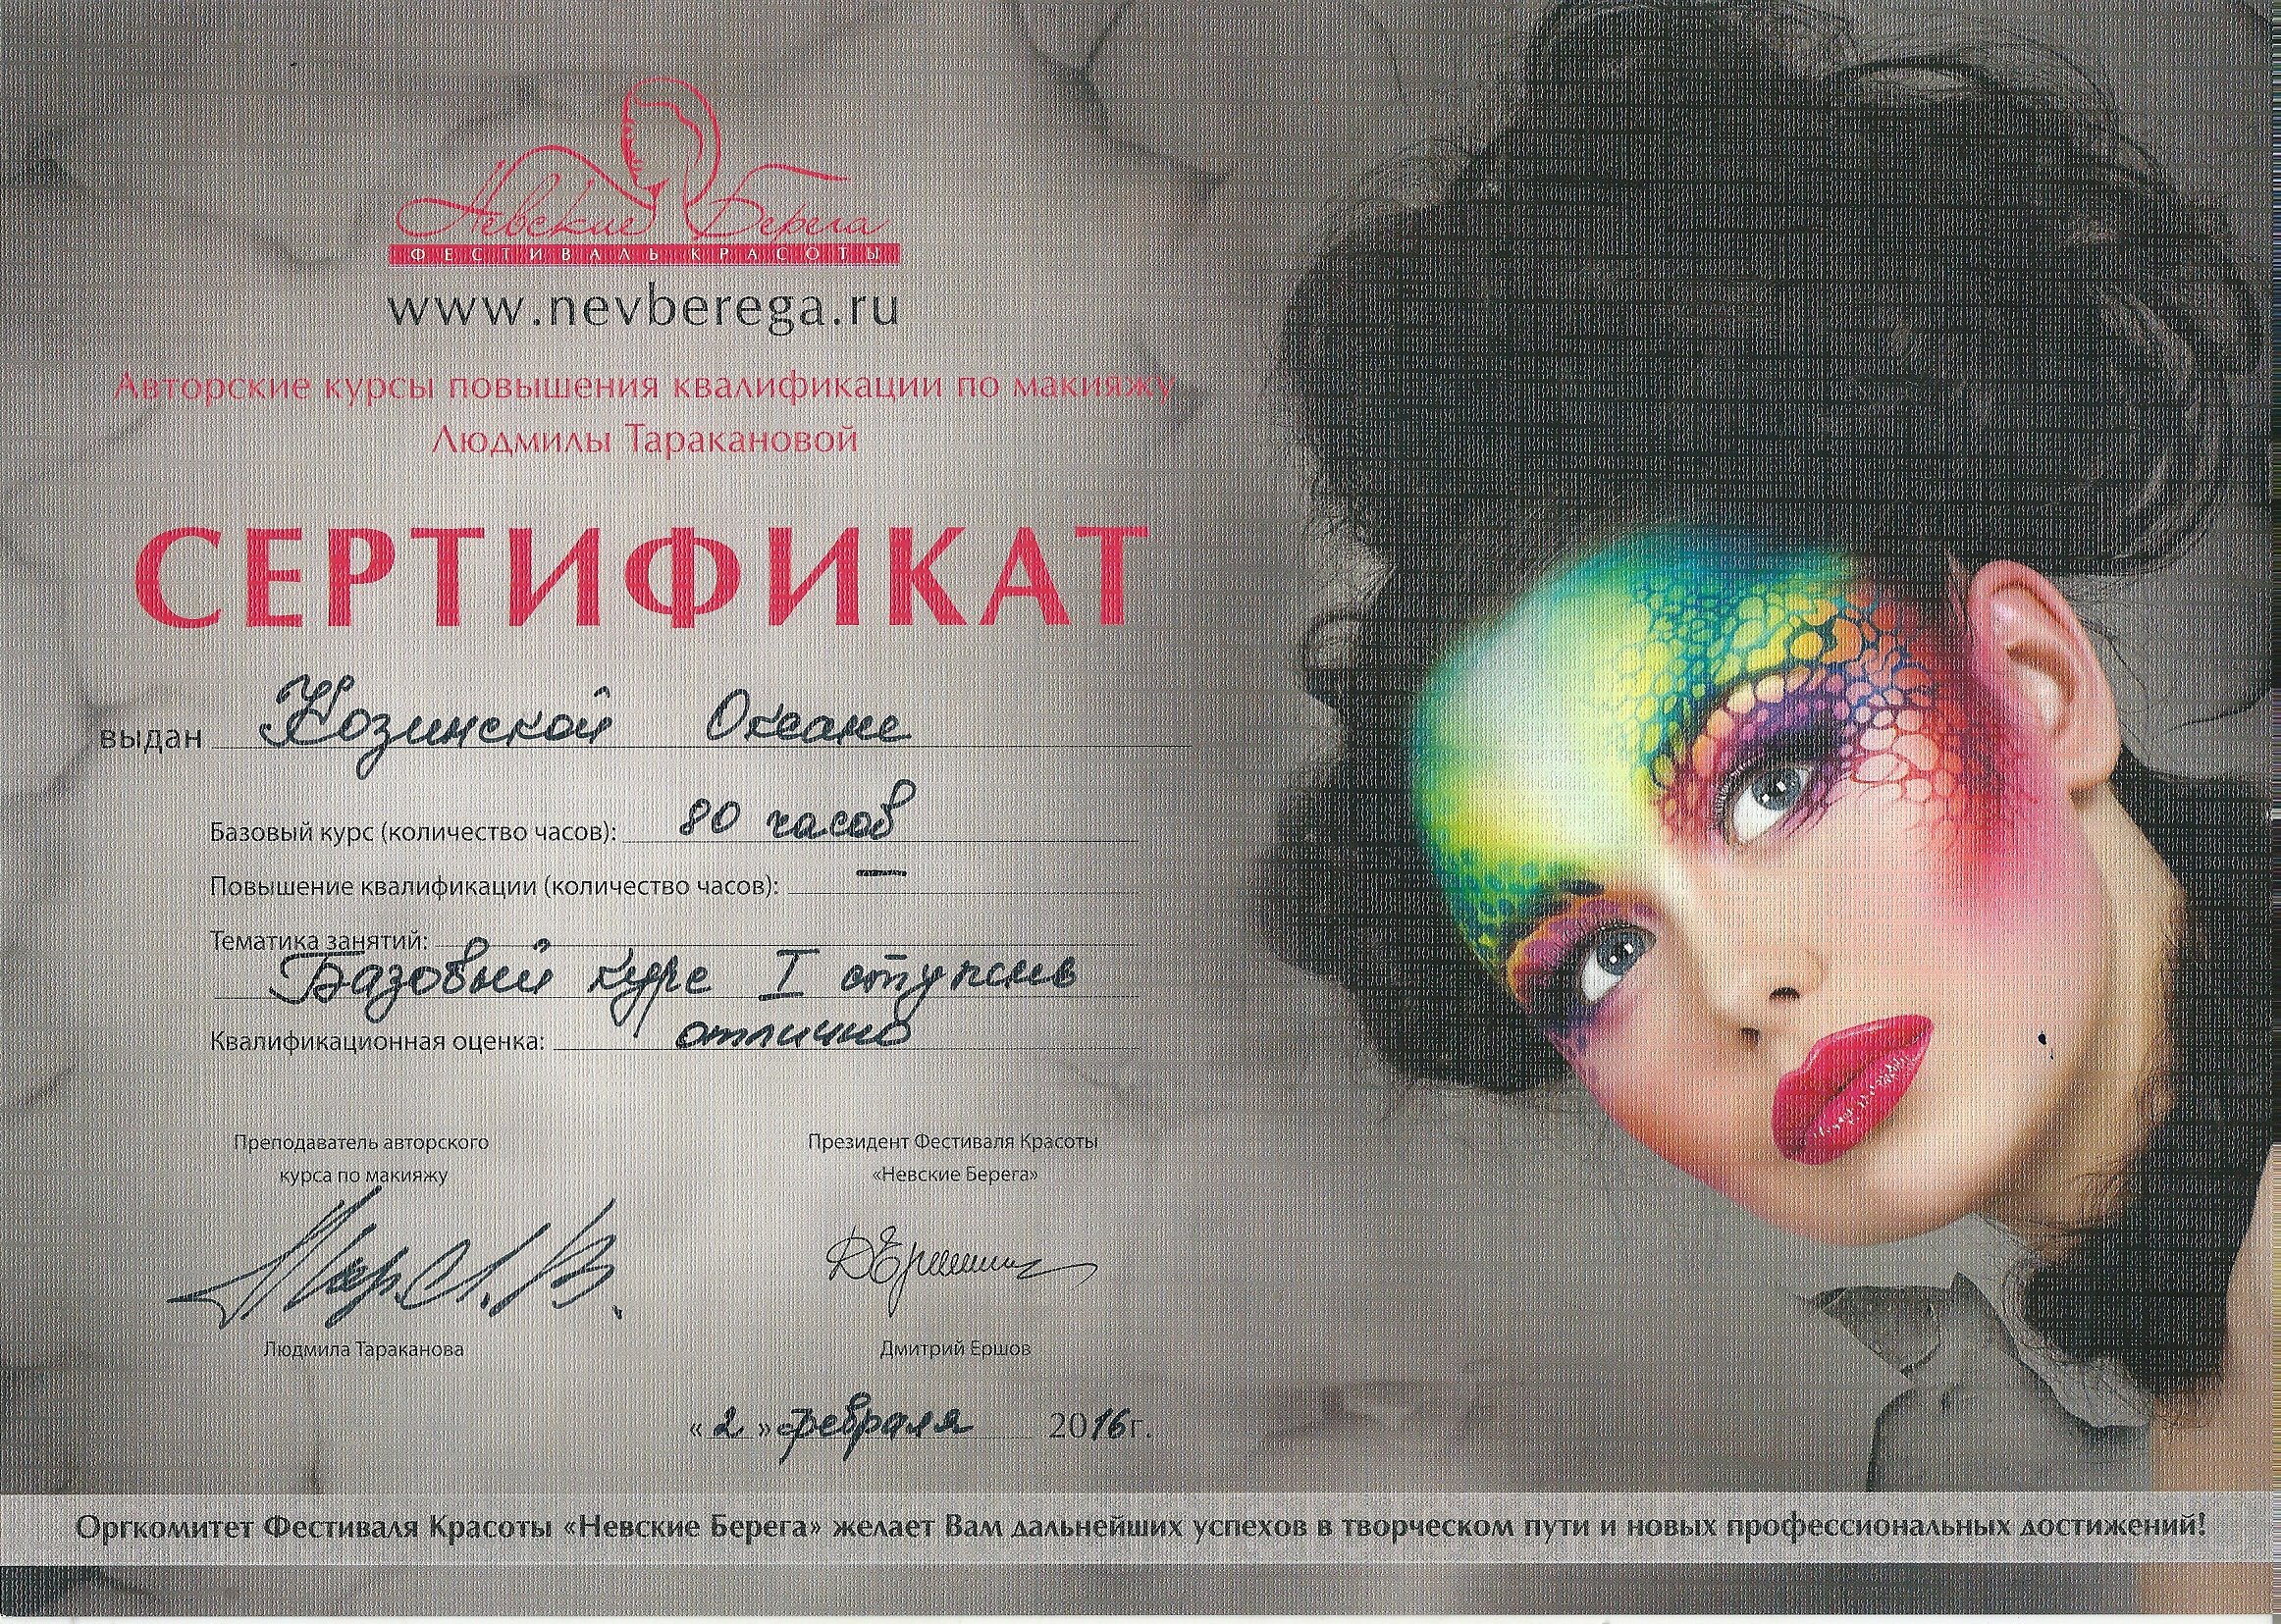 Курсы макияжа сертификатом